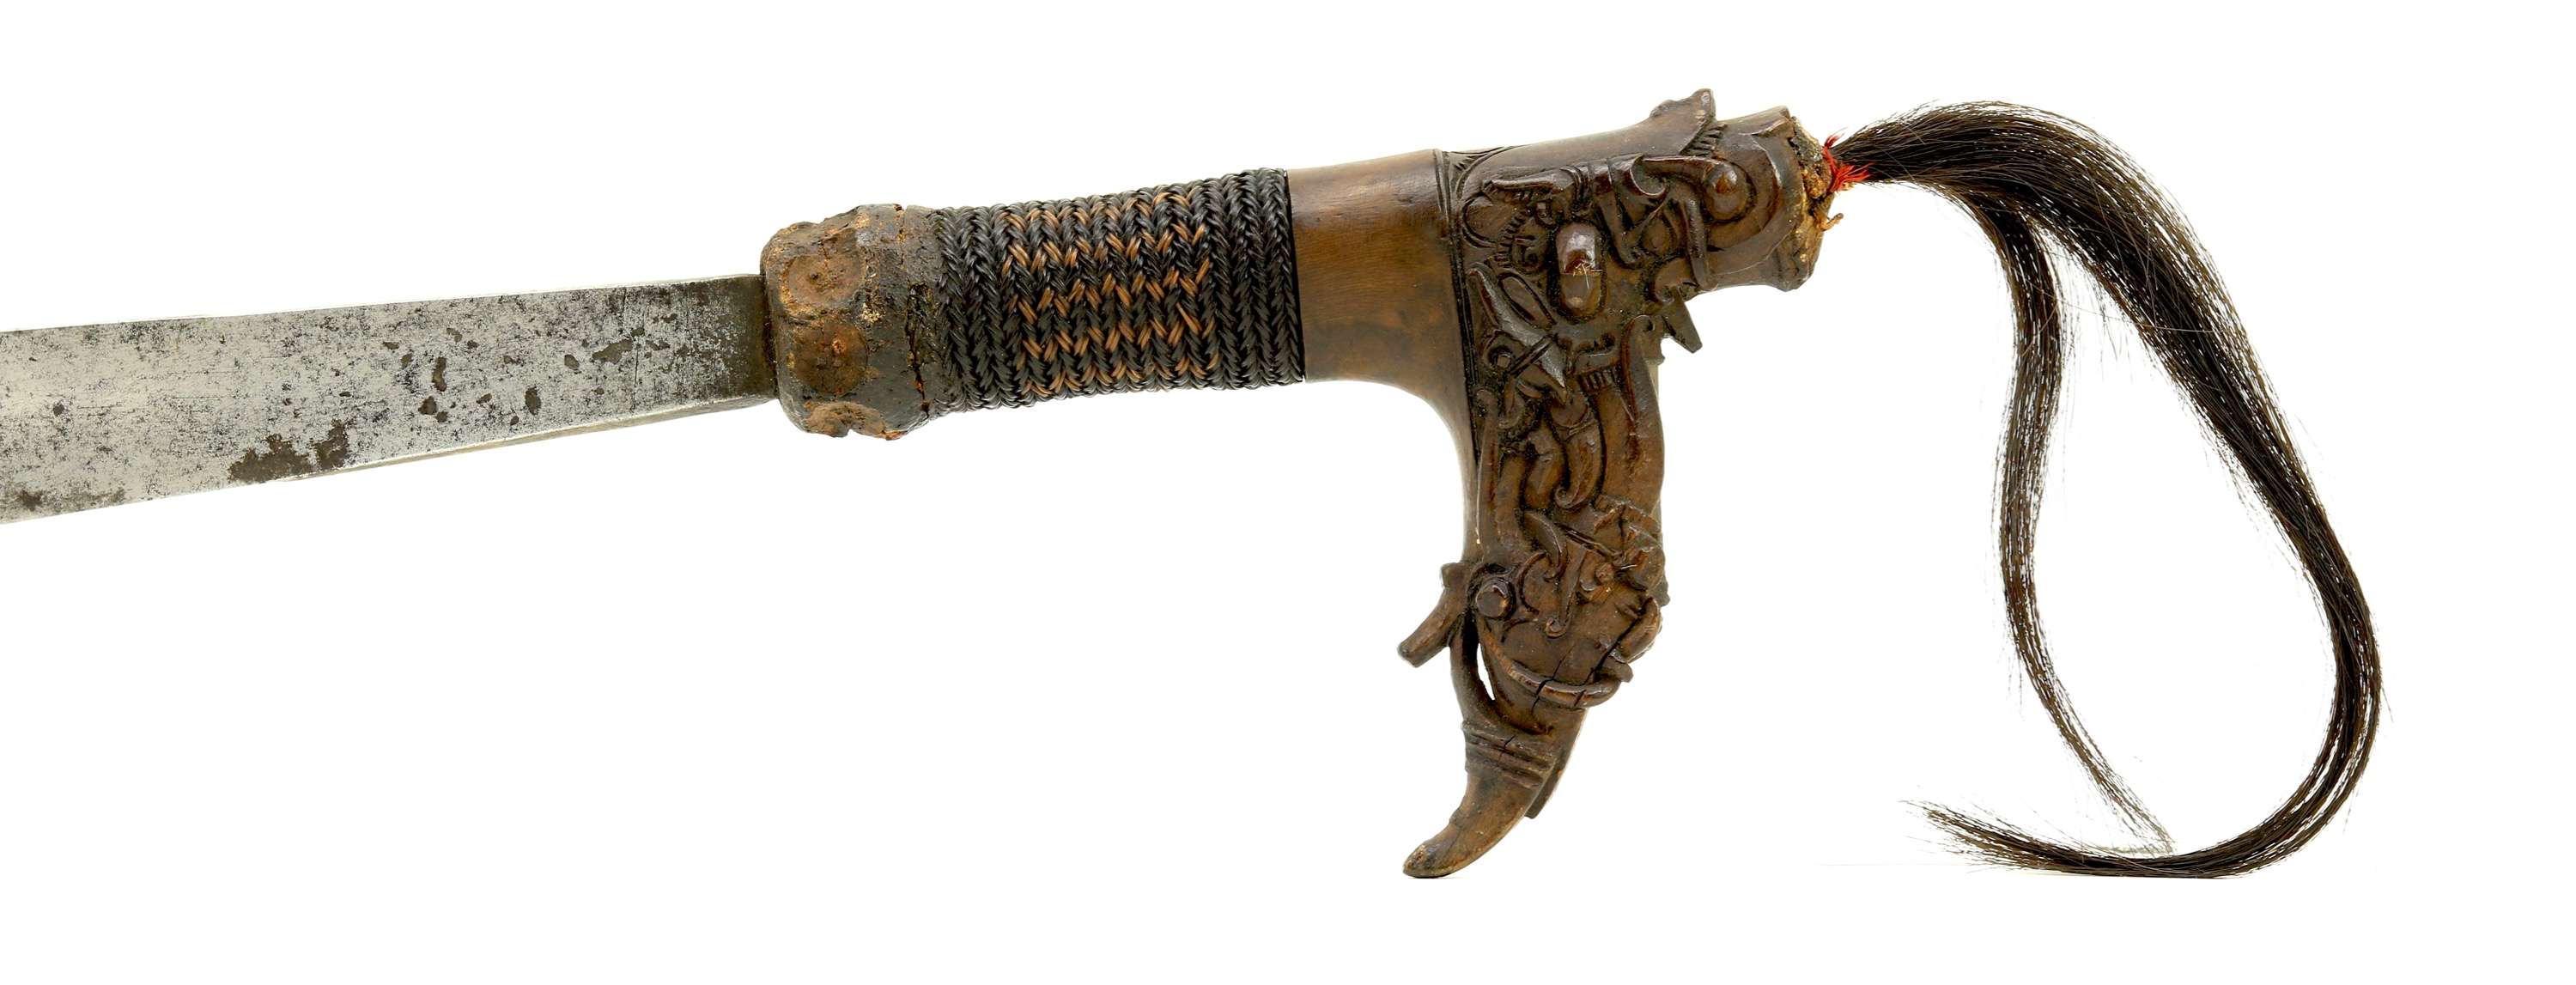 A fine silver copper brass inlaid mandau sword